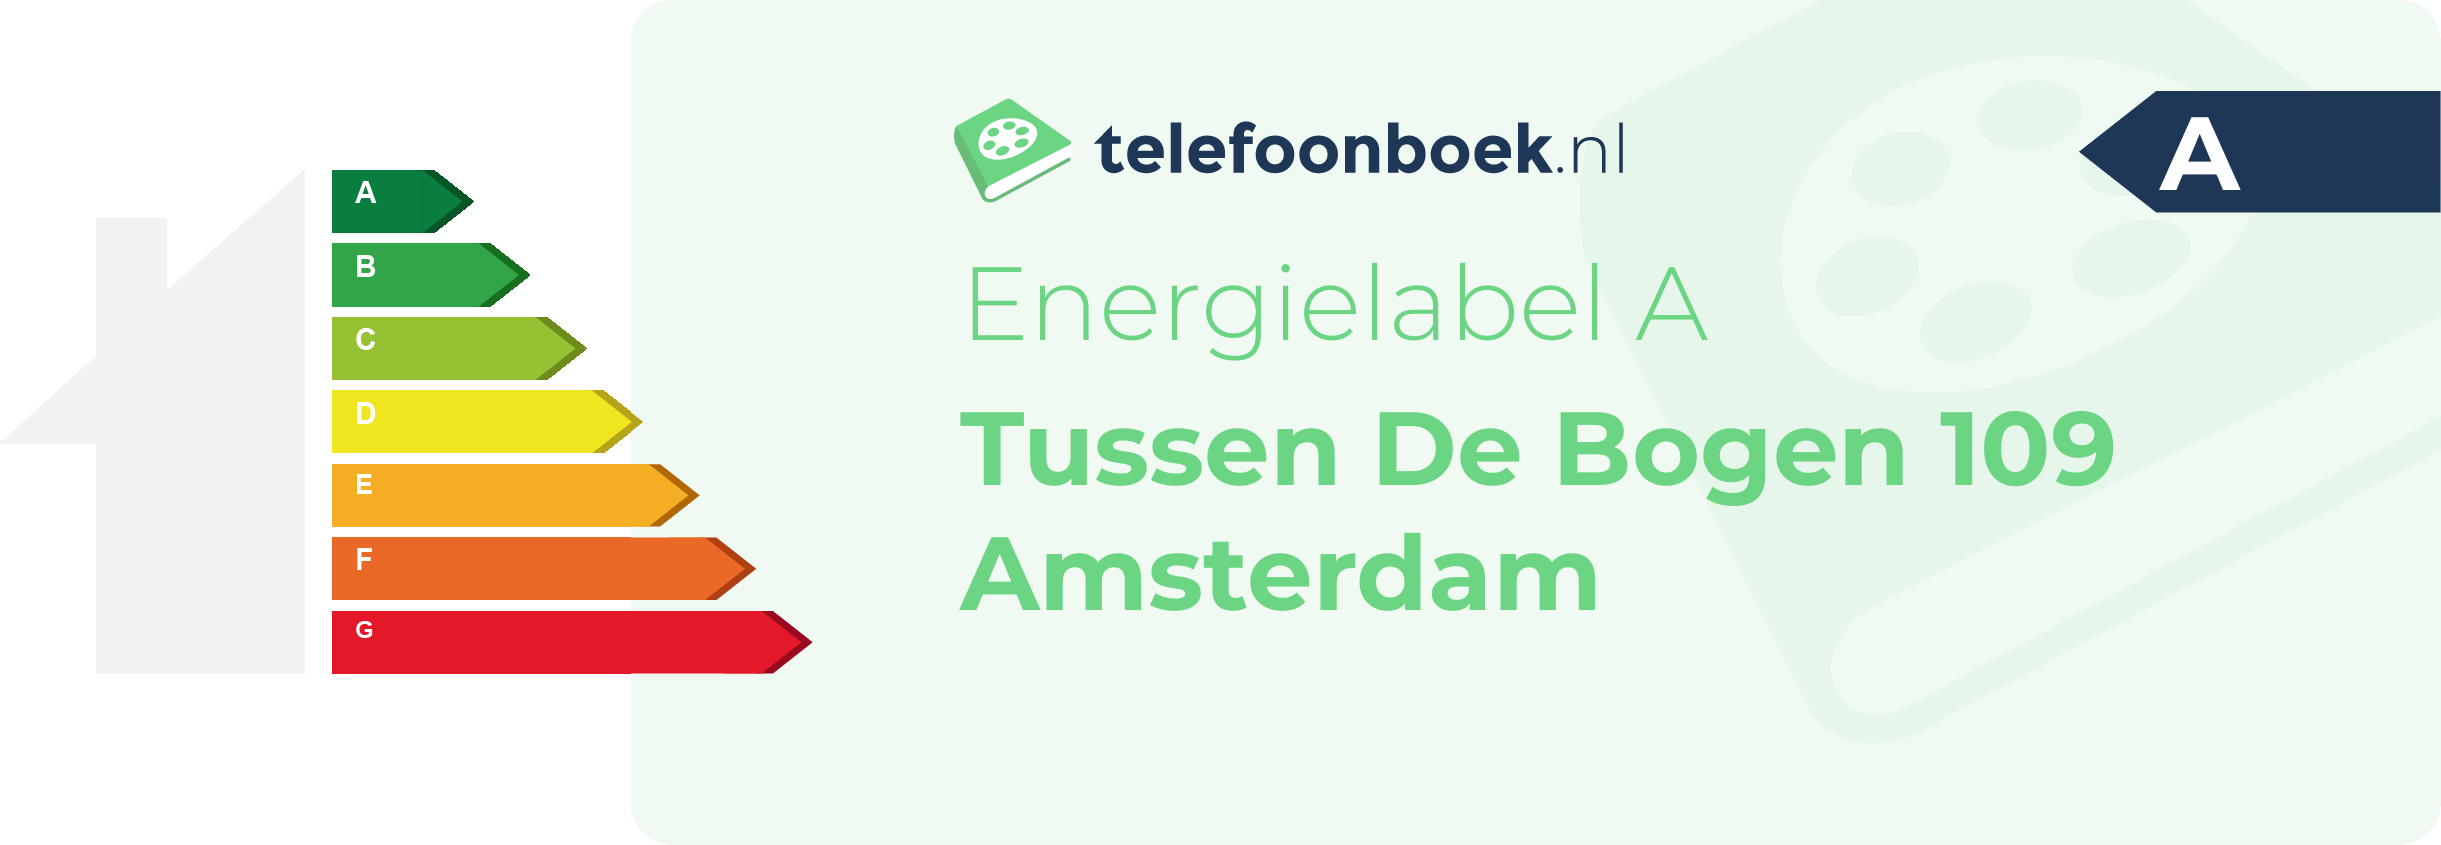 Energielabel Tussen De Bogen 109 Amsterdam